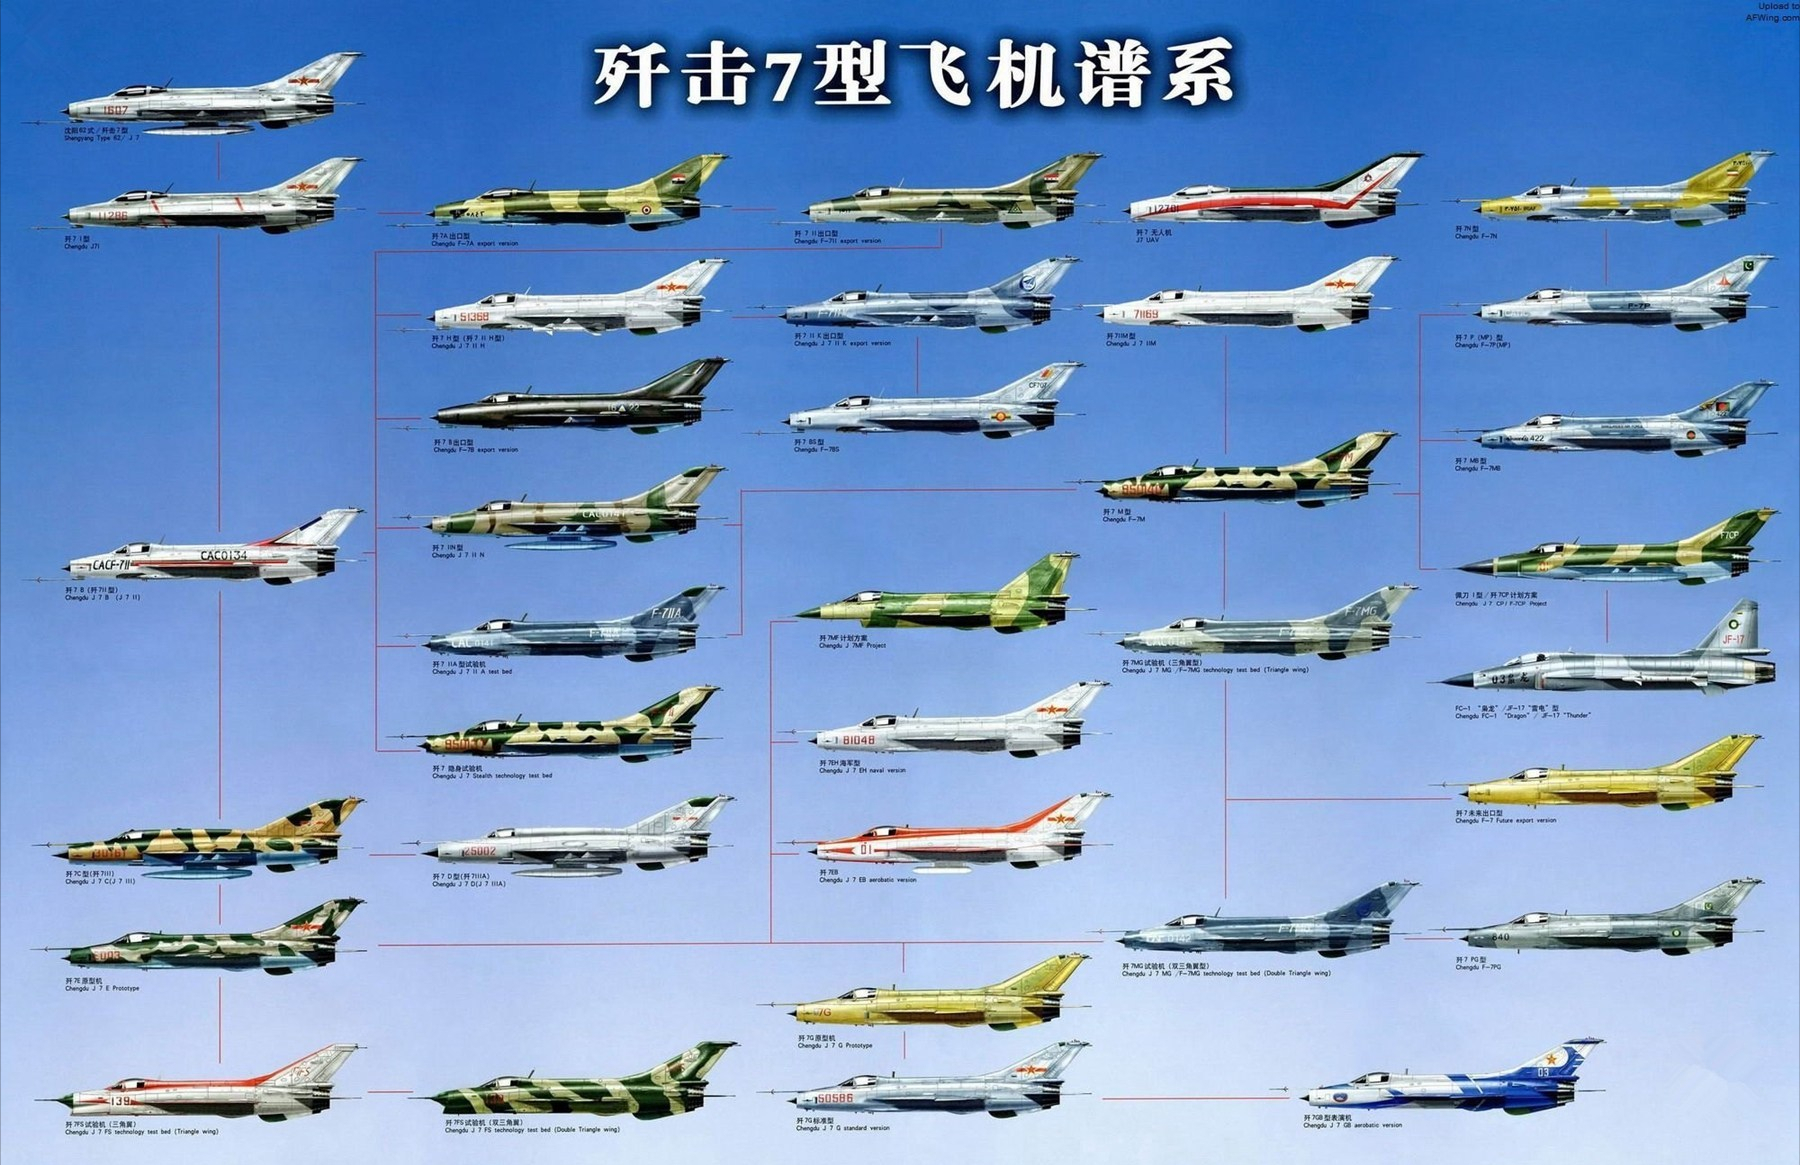 歼16和歼20批量服役，三代机超千架，歼-7战机为何还在用？